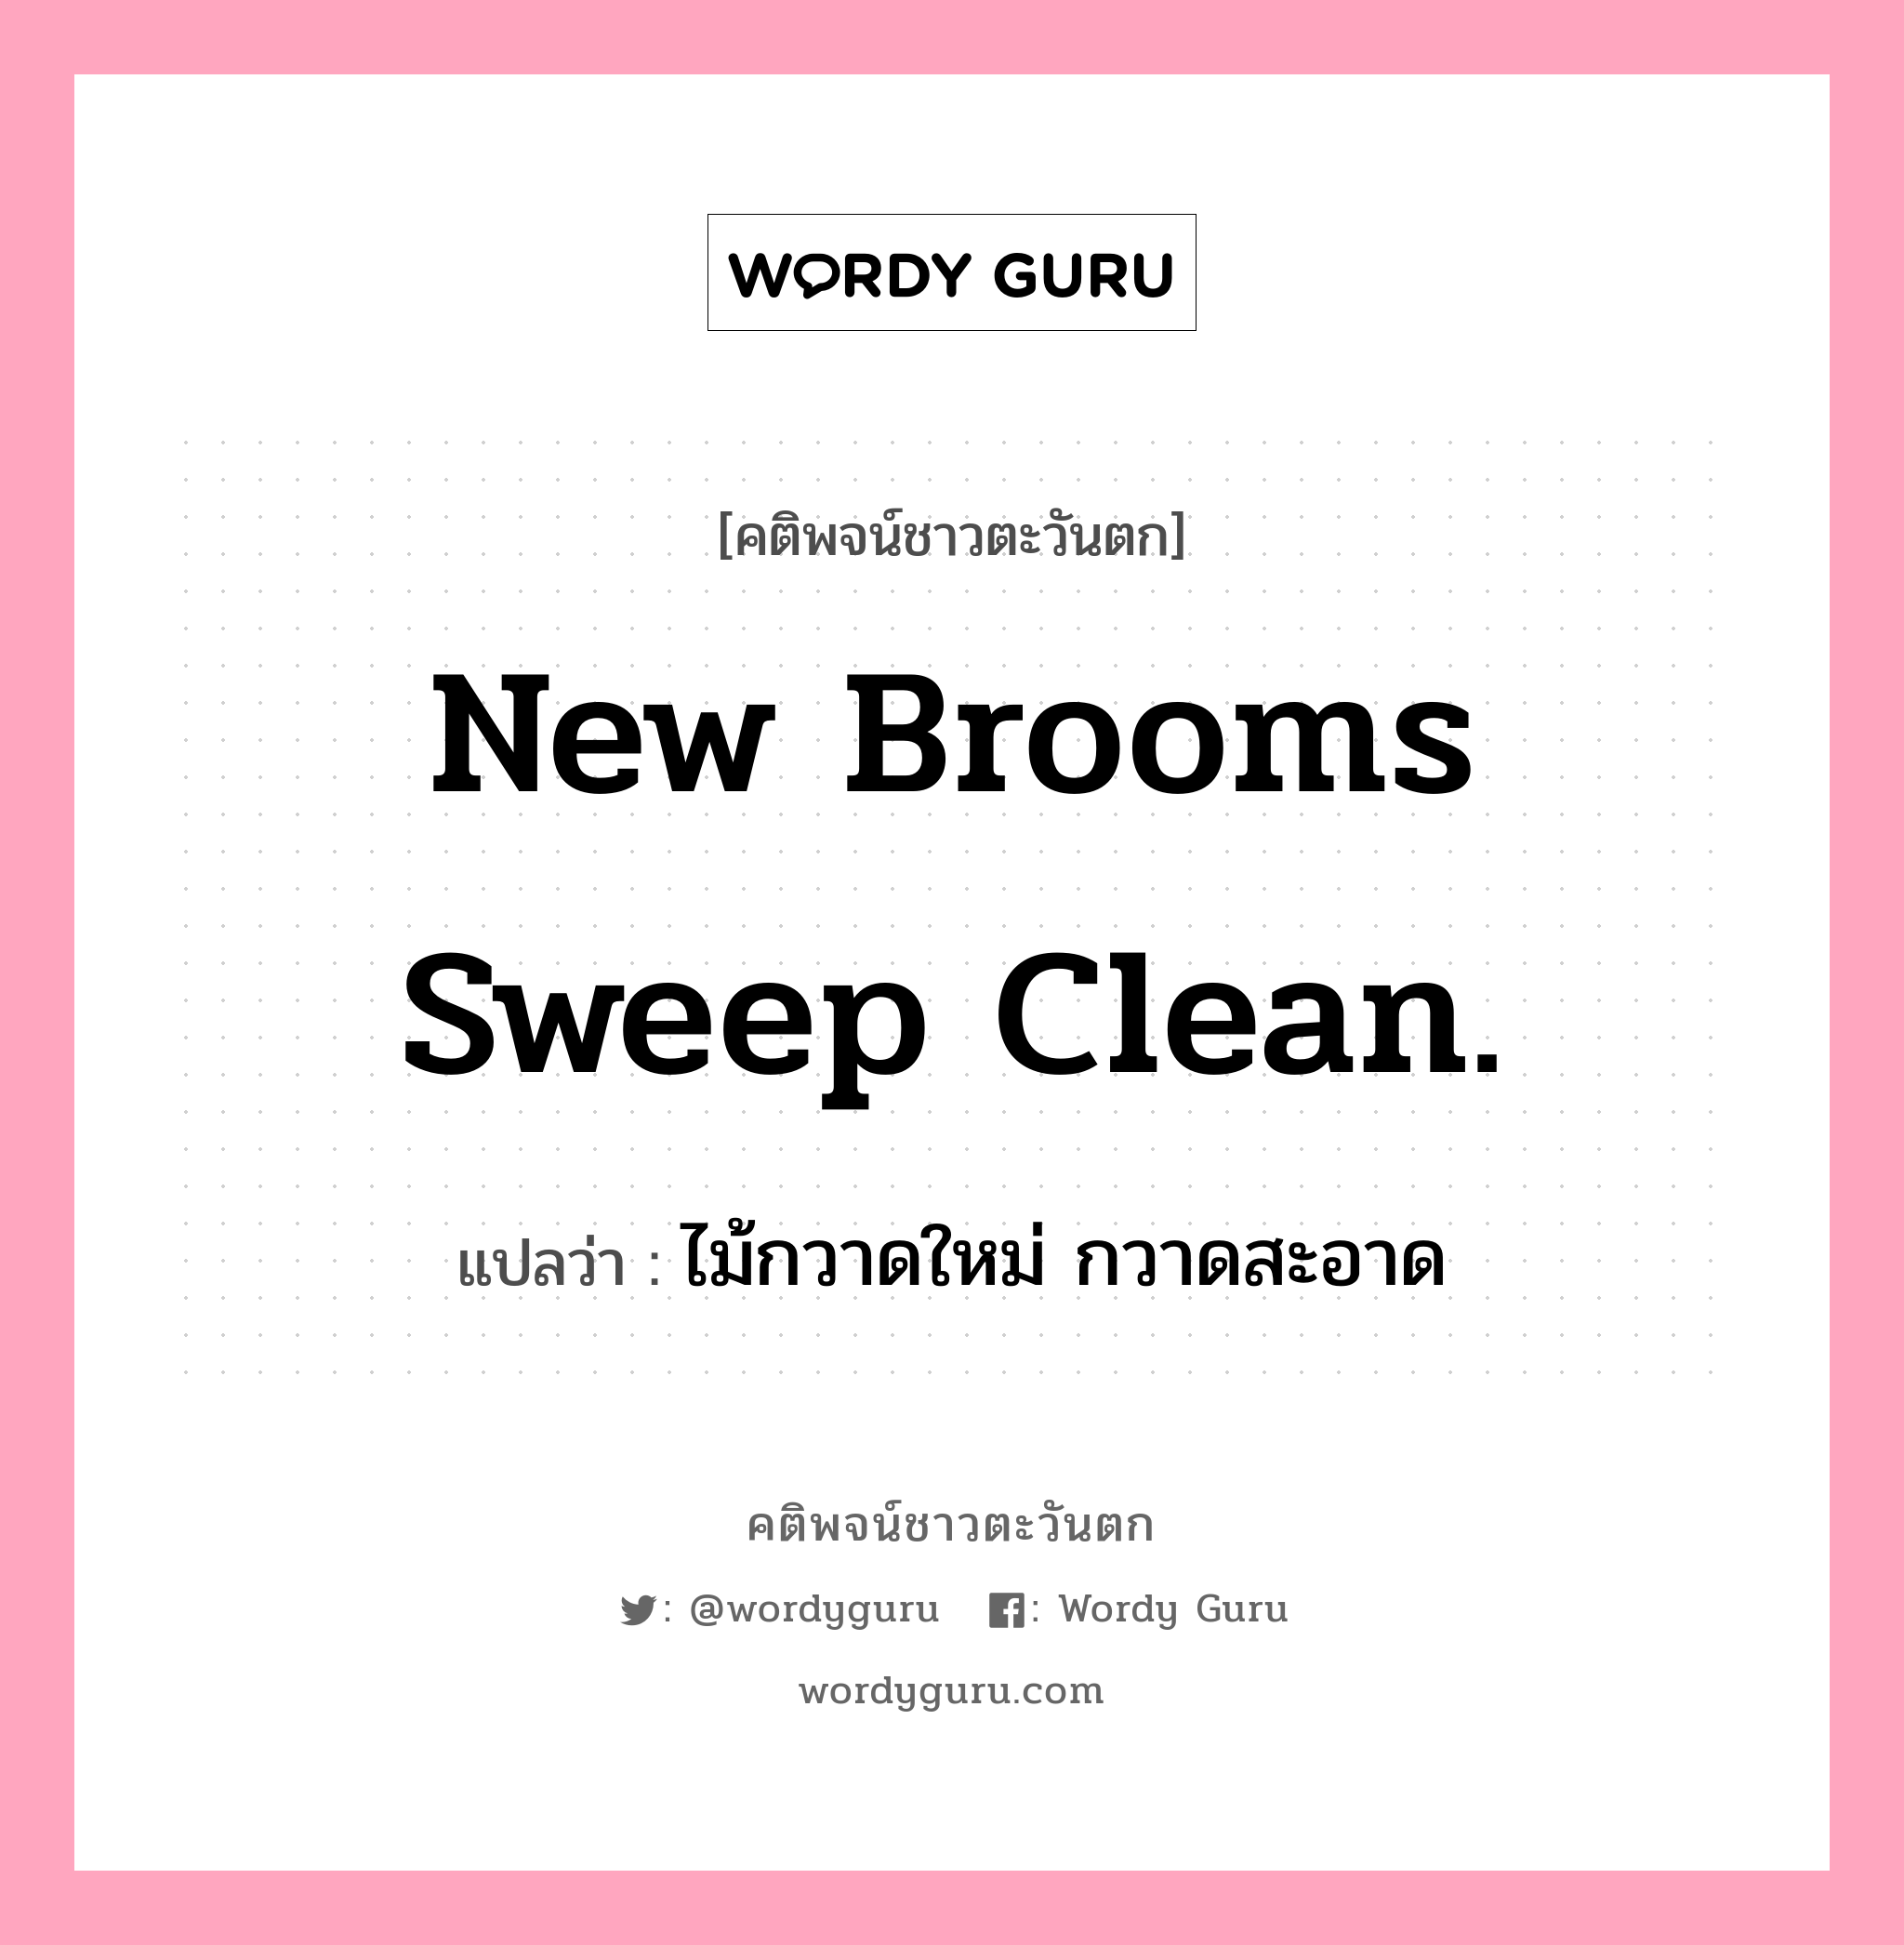 New brooms sweep clean., คติพจน์ชาวตะวันตก New brooms sweep clean. แปลว่า ไม้กวาดใหม่ กวาดสะอาด